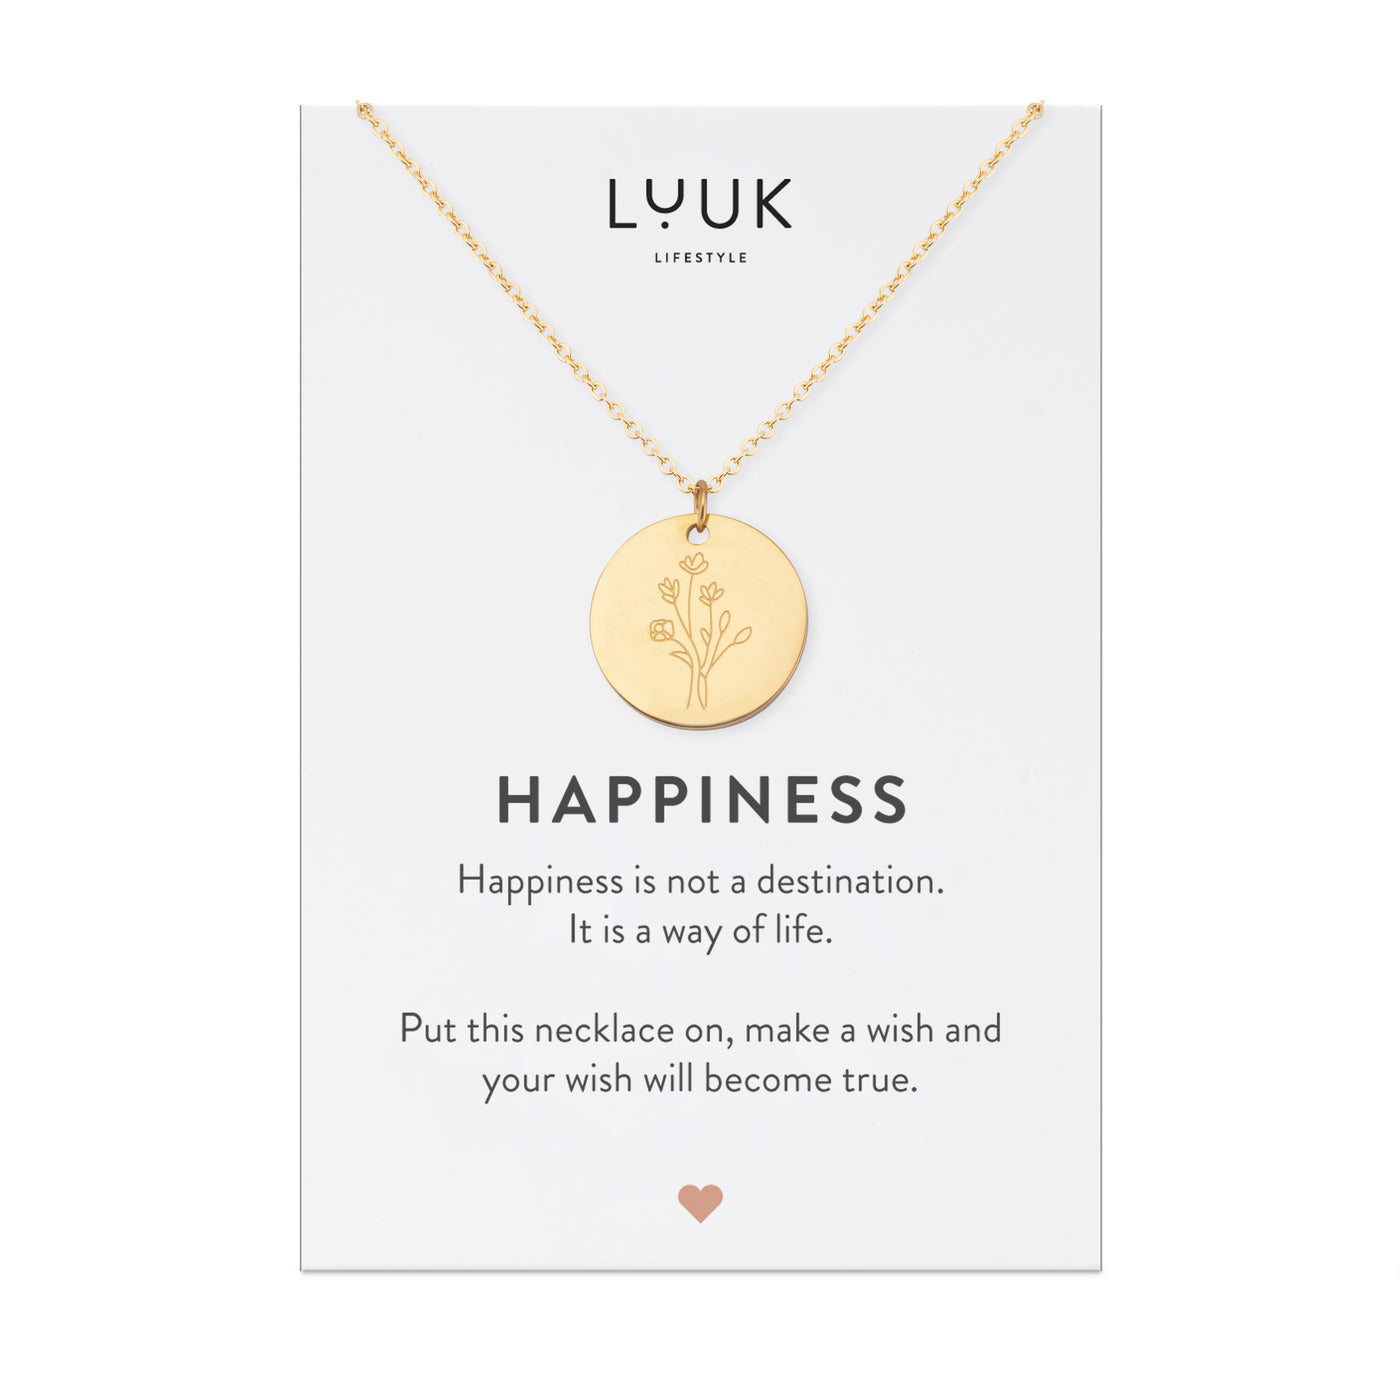 Goldene Halskette mit Blumen Anhänger auf Happiness Karte von der Brand Luuk Lifestyle.